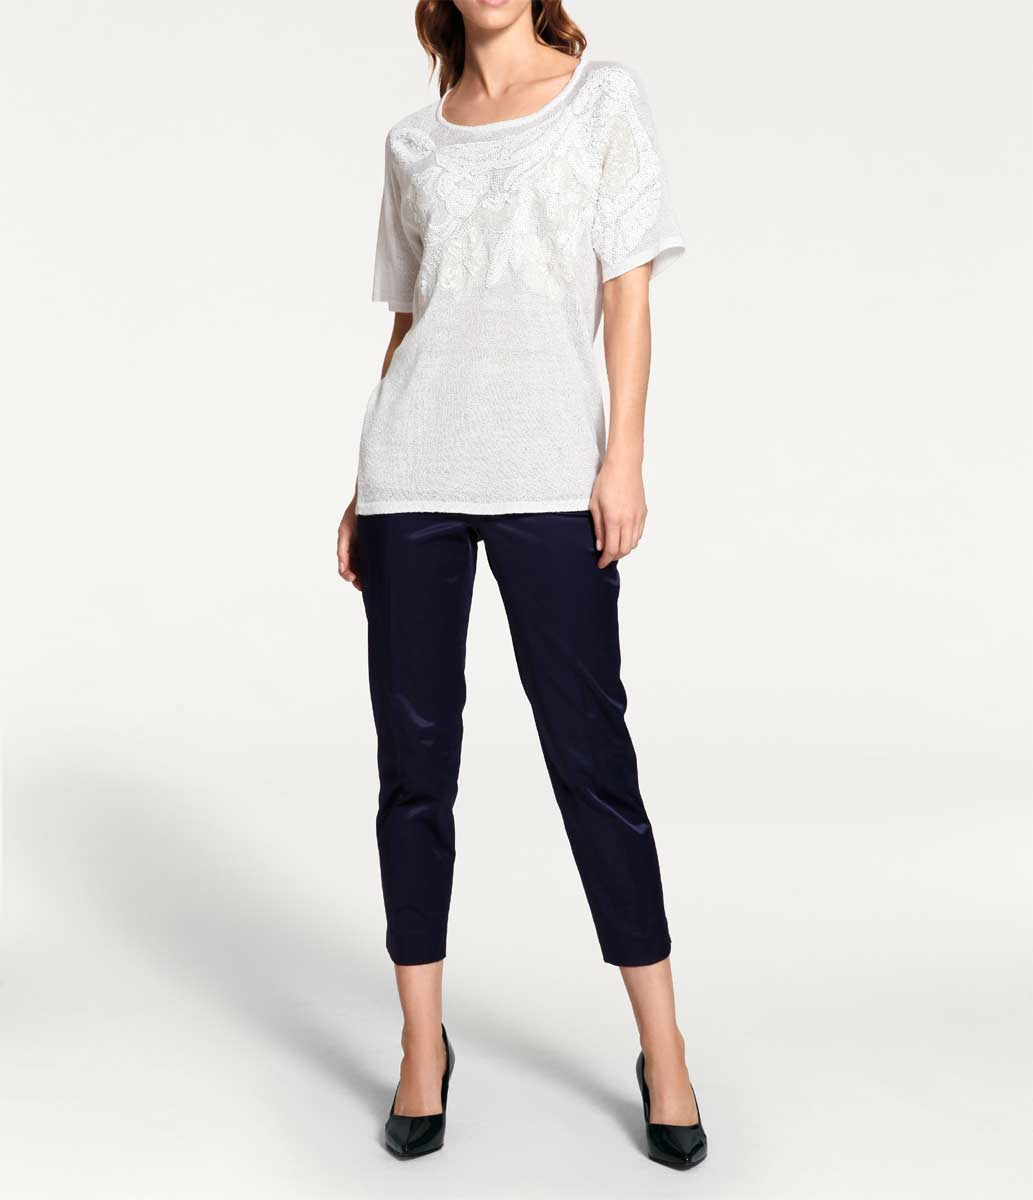 Ashley Brooke Damen Designer-Pullover mit Pailletten, weiß